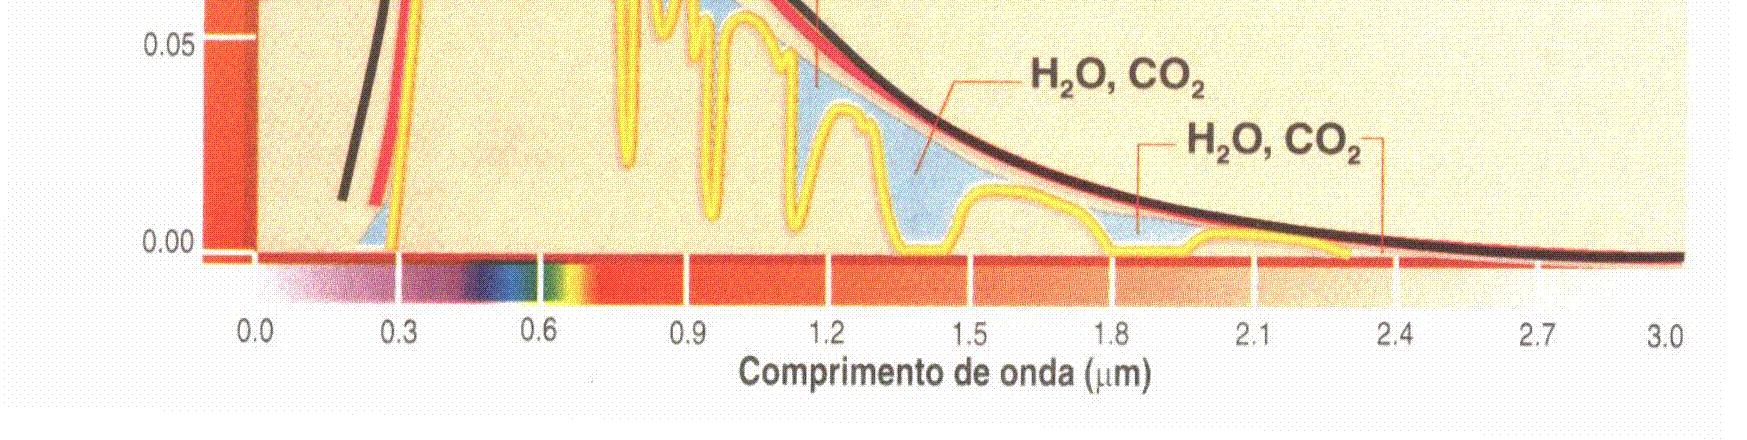 rios gases atmosféricos. Note que o vapor d água absorve a radiação solar em vários comprimentos de onda. A curva de irradiância de um corpo negro também é mostrada nesta figura.